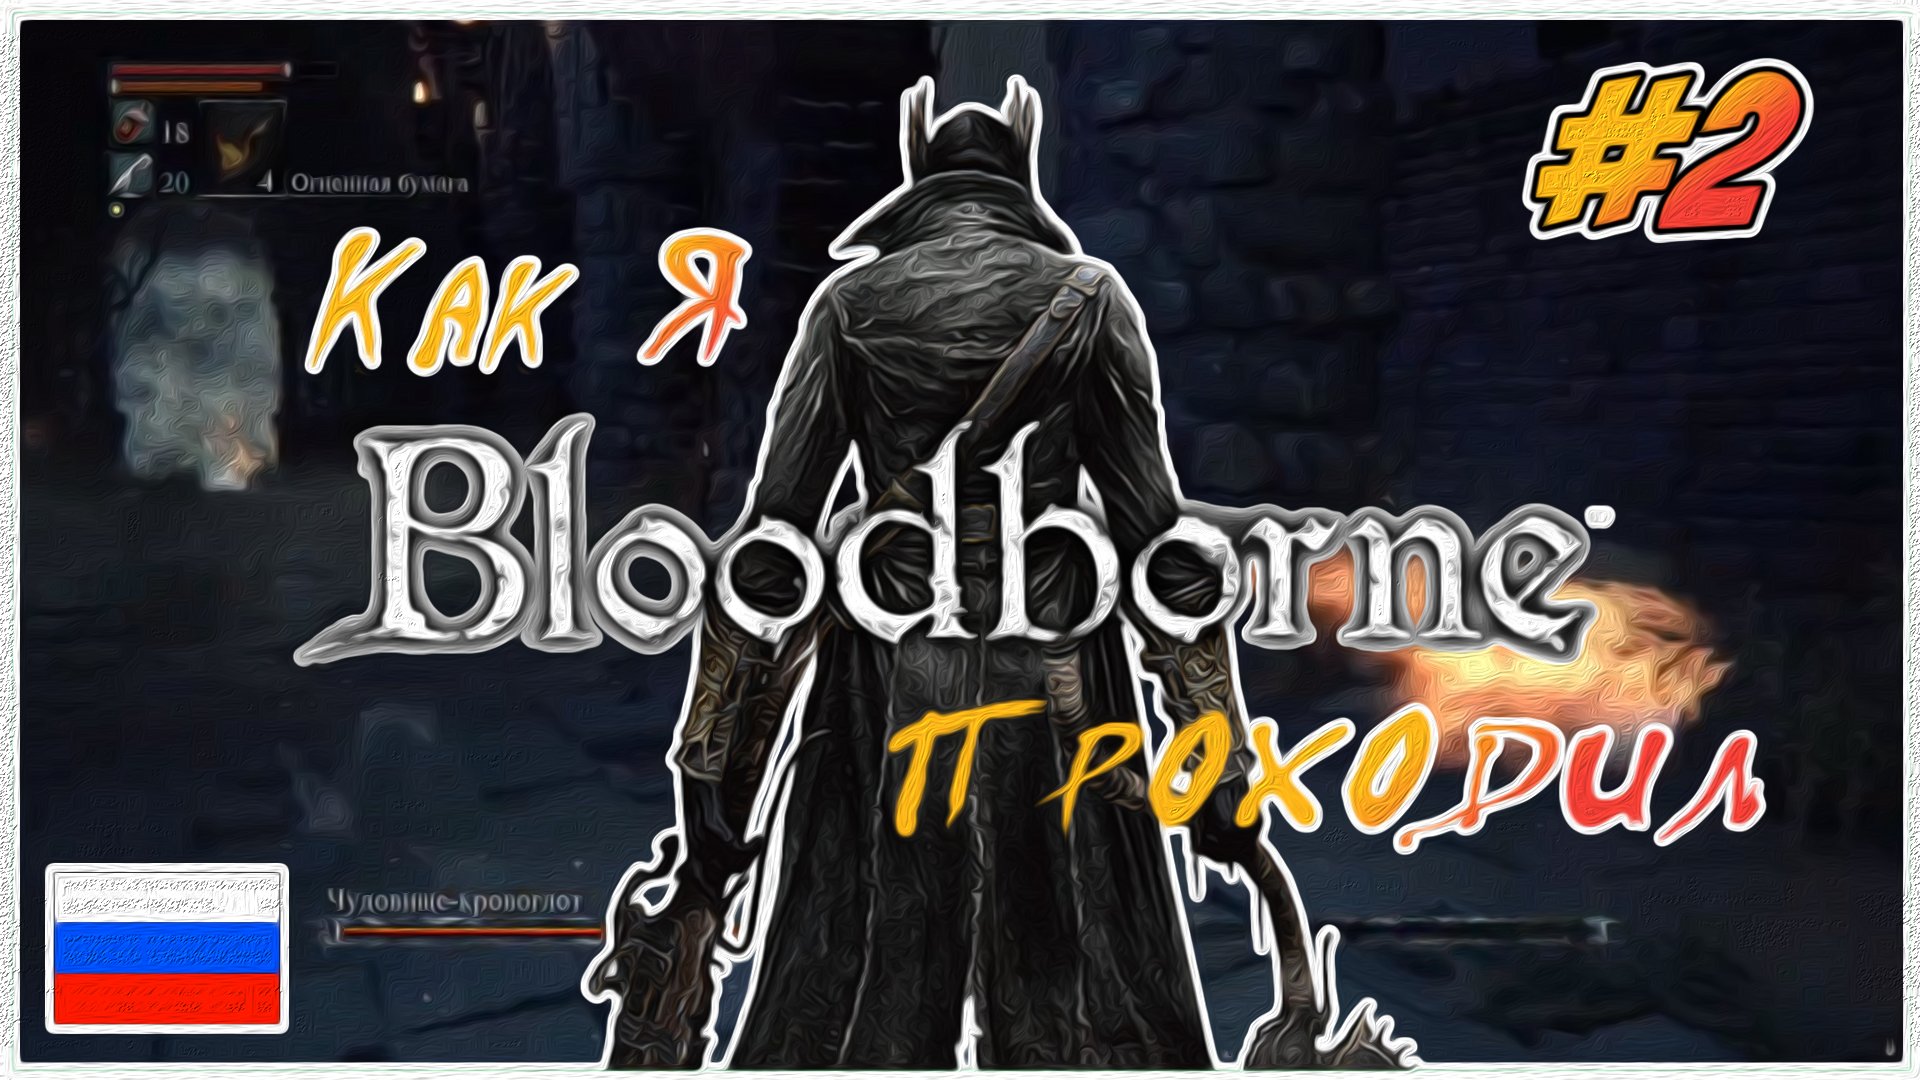 Как я Bloodborne проходил | PS4 #2